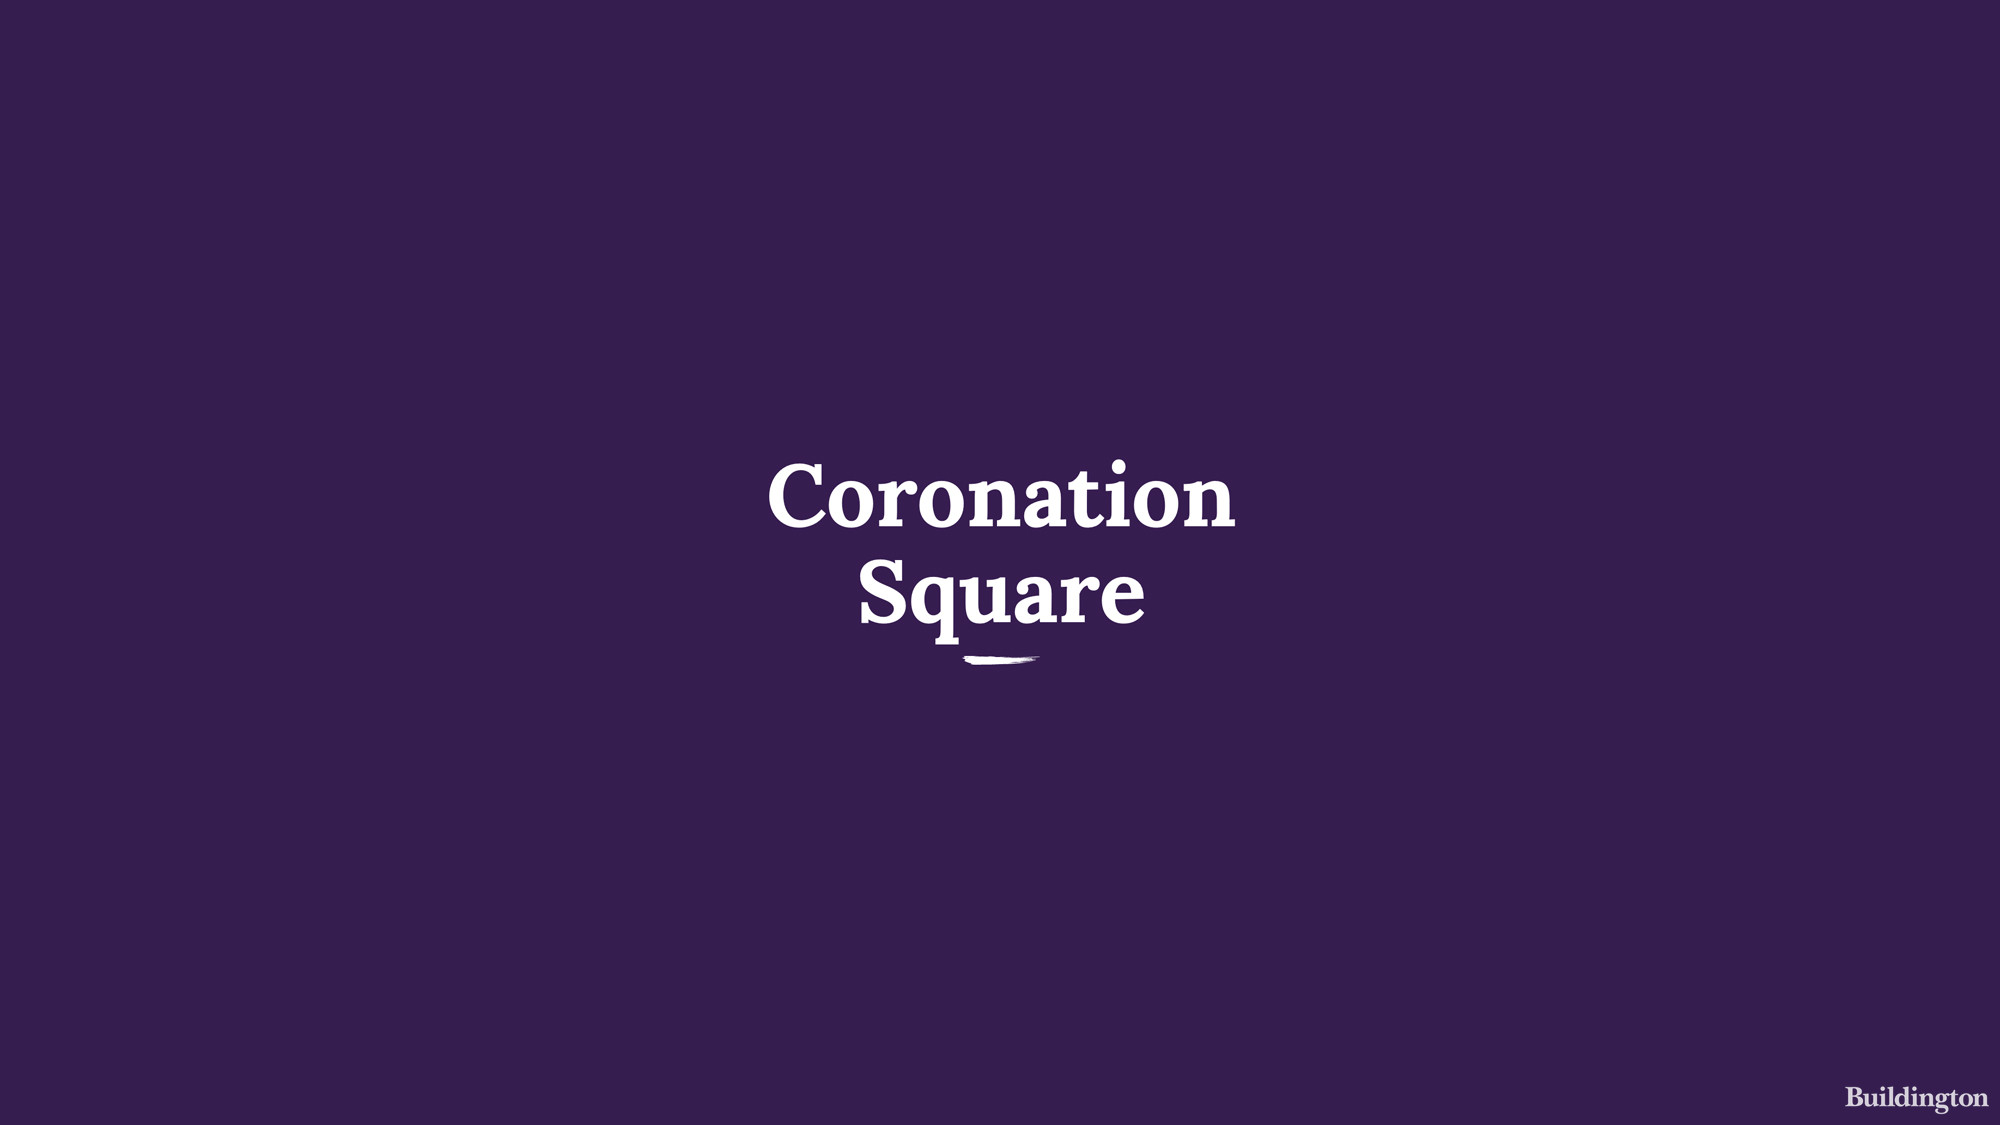 Coronation Square development cover image